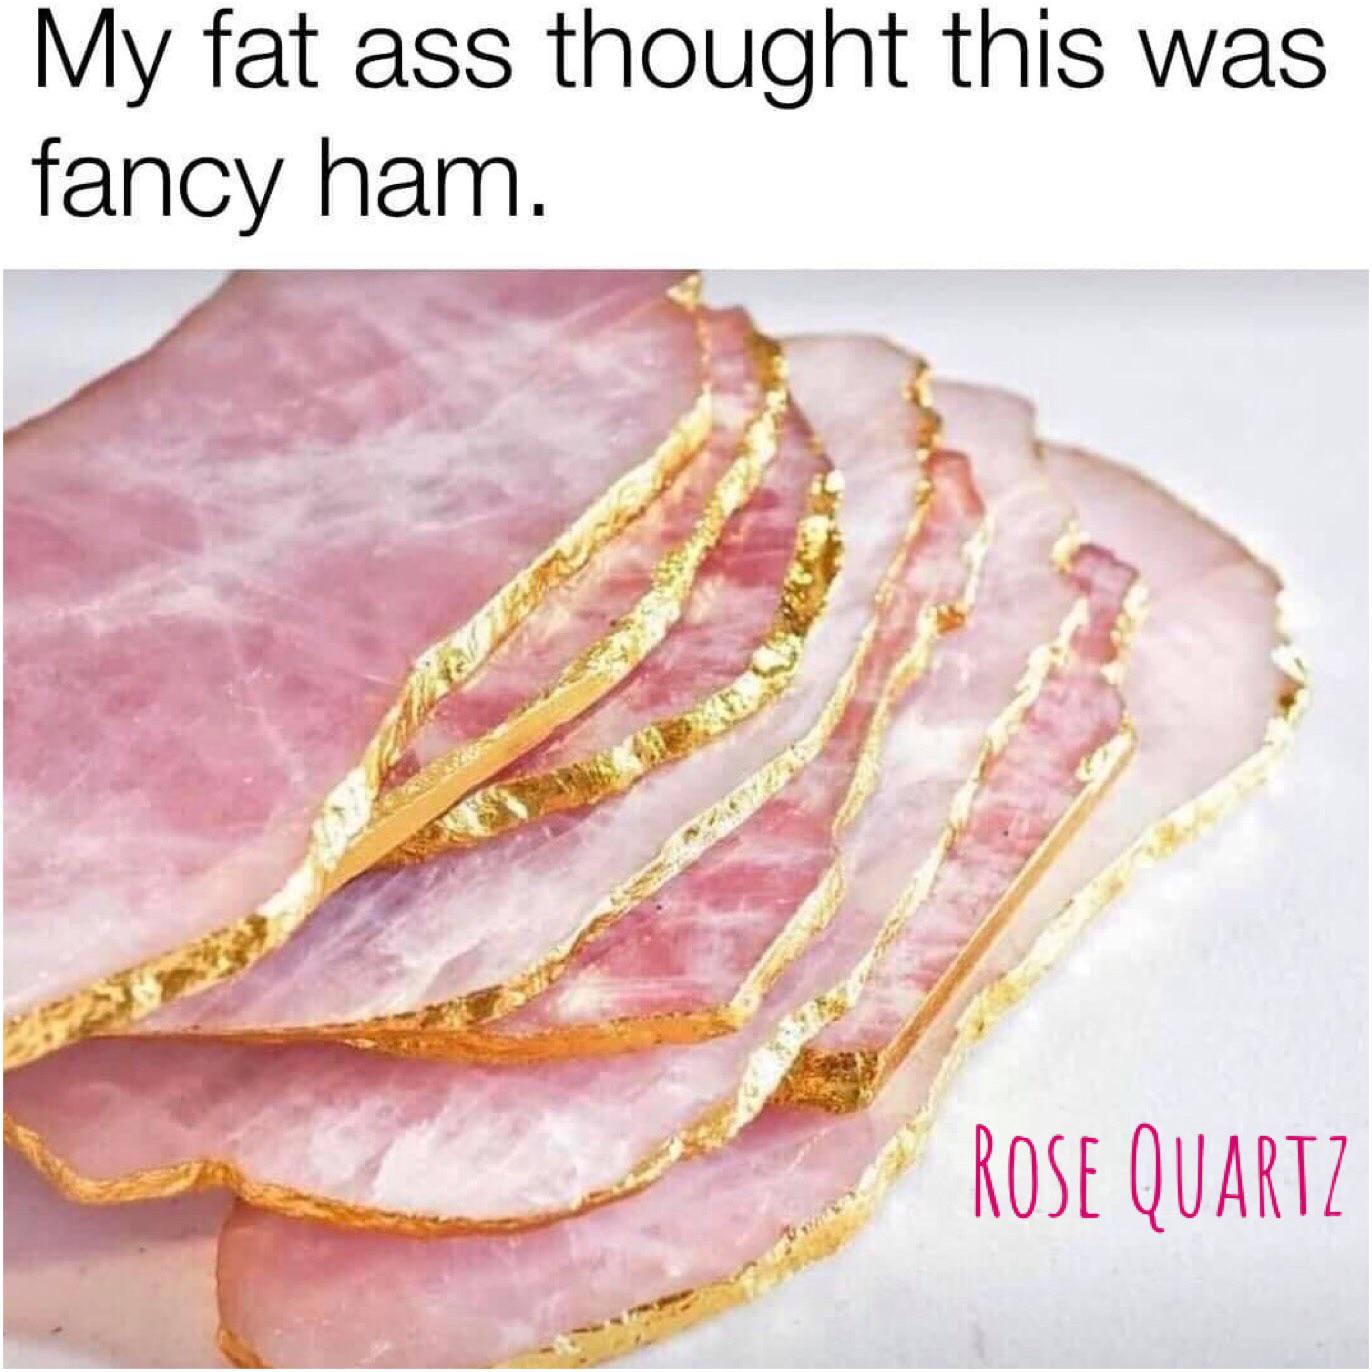 I'd still eat it.